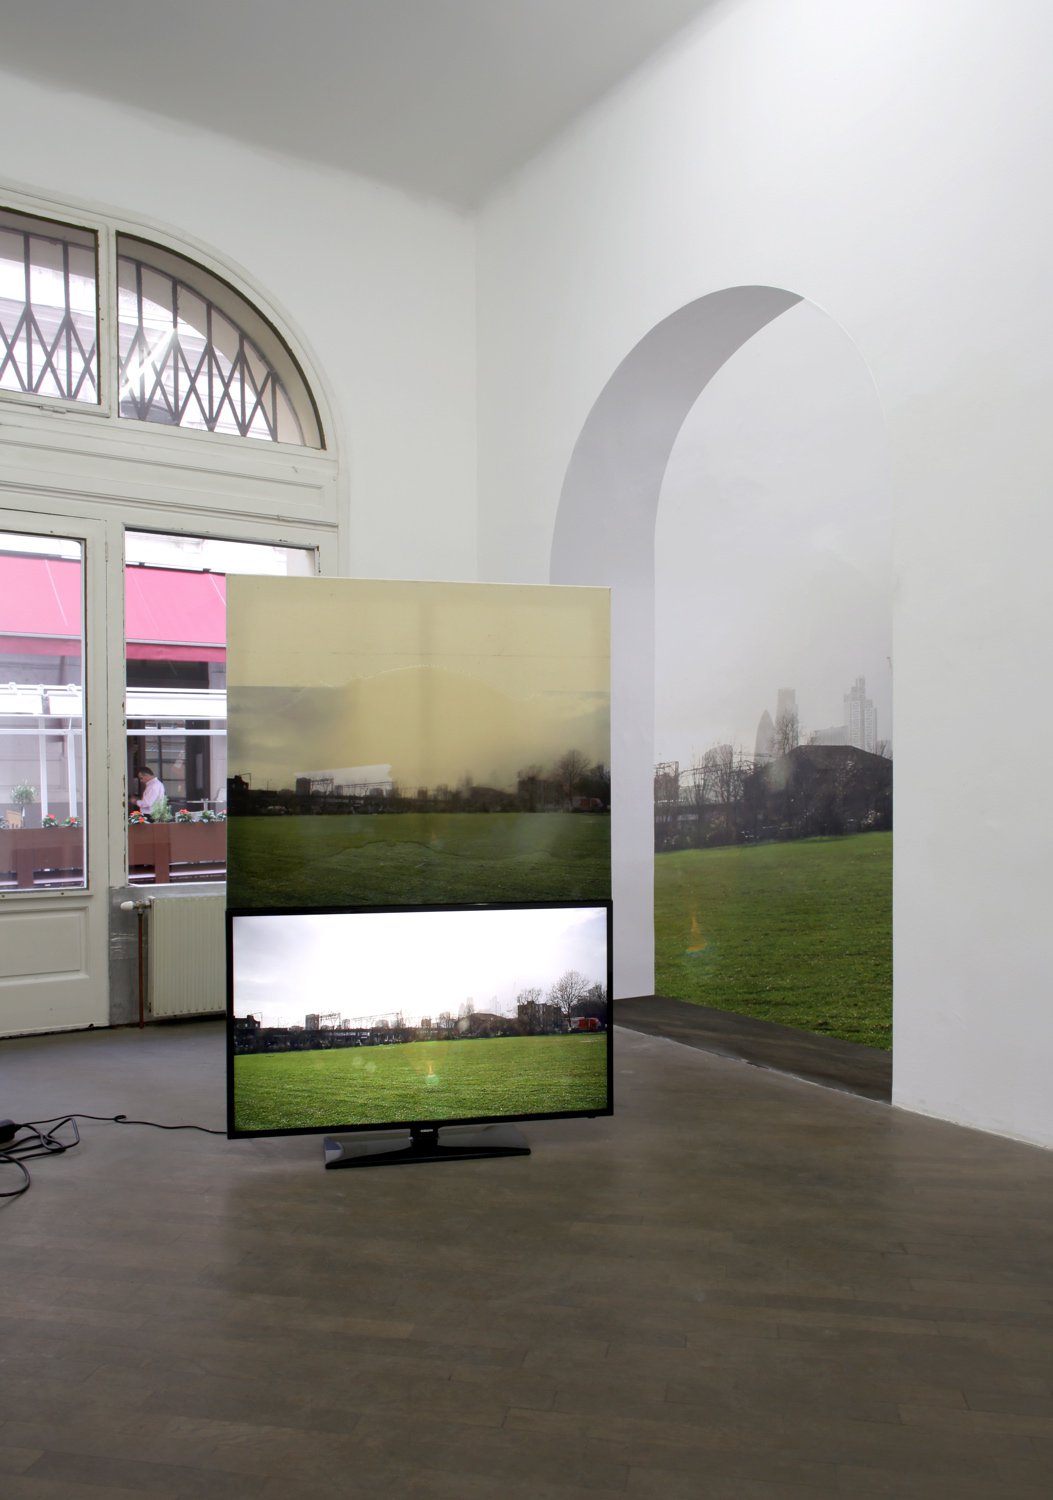 Philipp TimischlYET, THE ALTERNATIVES ON OFFER, 2014Installation viewLayr An der Hülben, Vienna